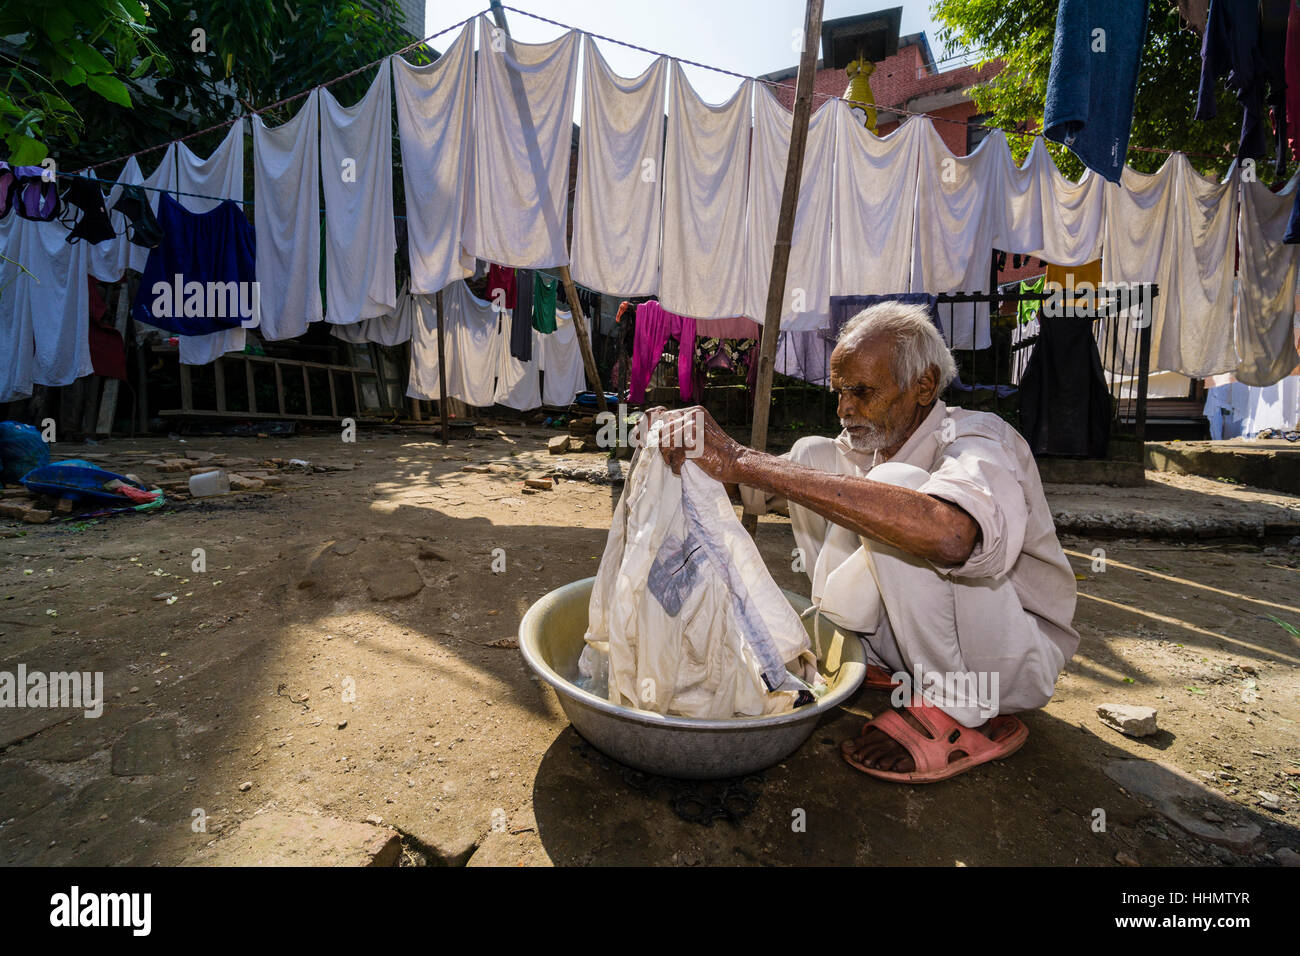 Uomo che fa servizio lavanderia a mano nel cortile, Kathmandu, Distretto di Kathmandu, Nepal Foto Stock